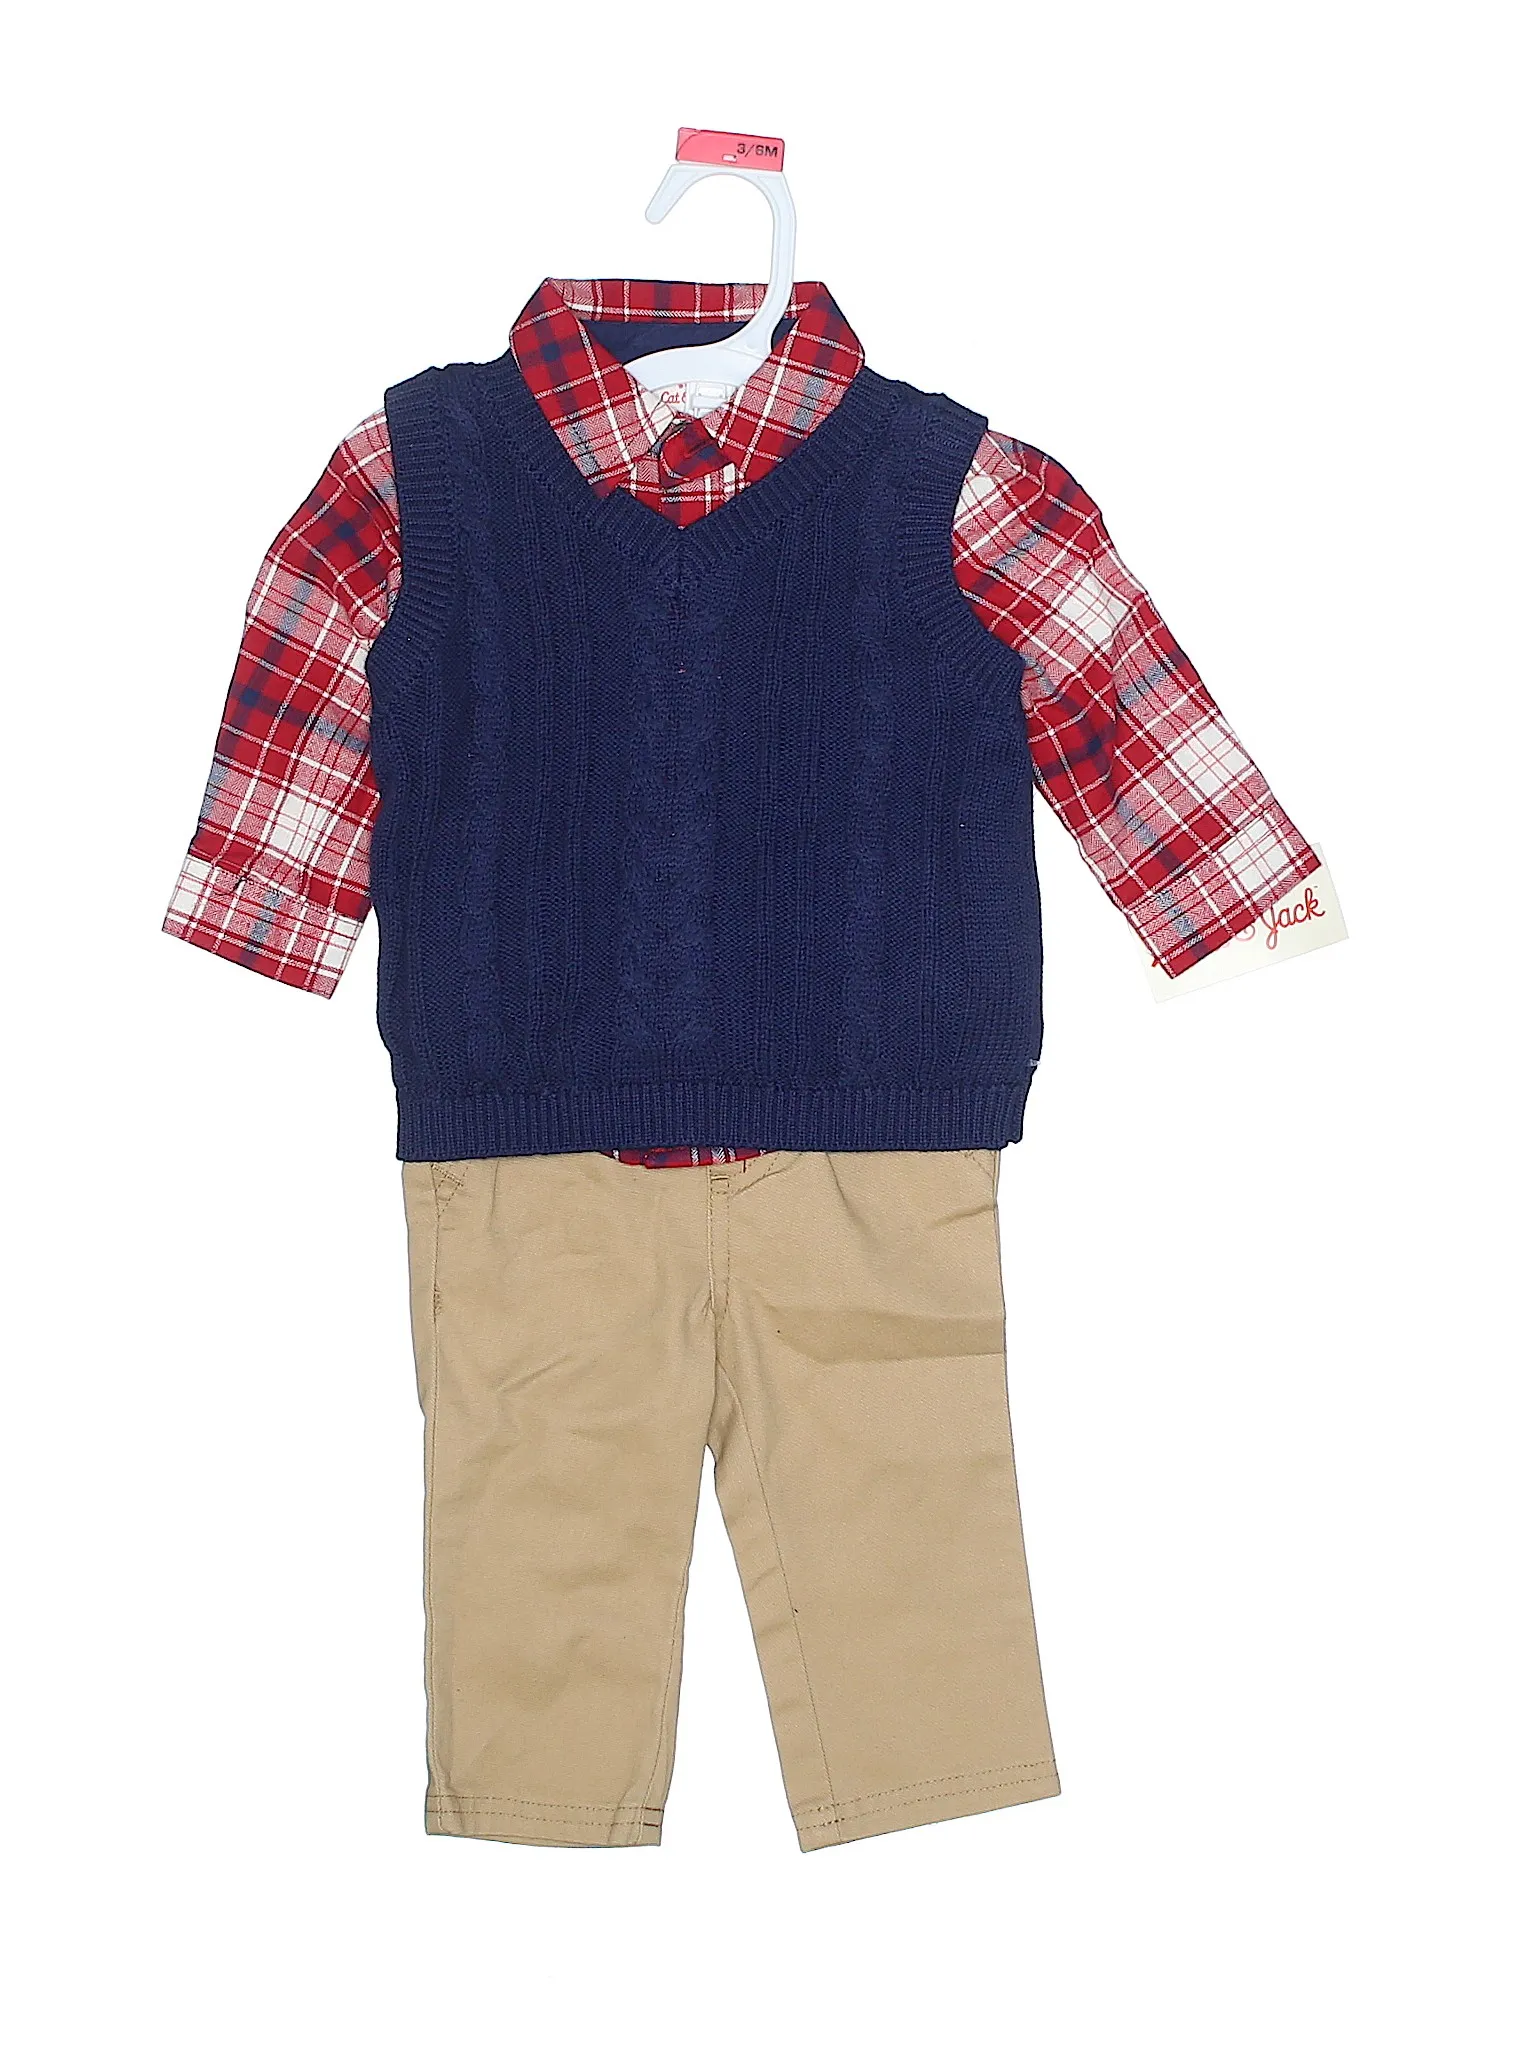 Baby Wholesale Clothing Bradford